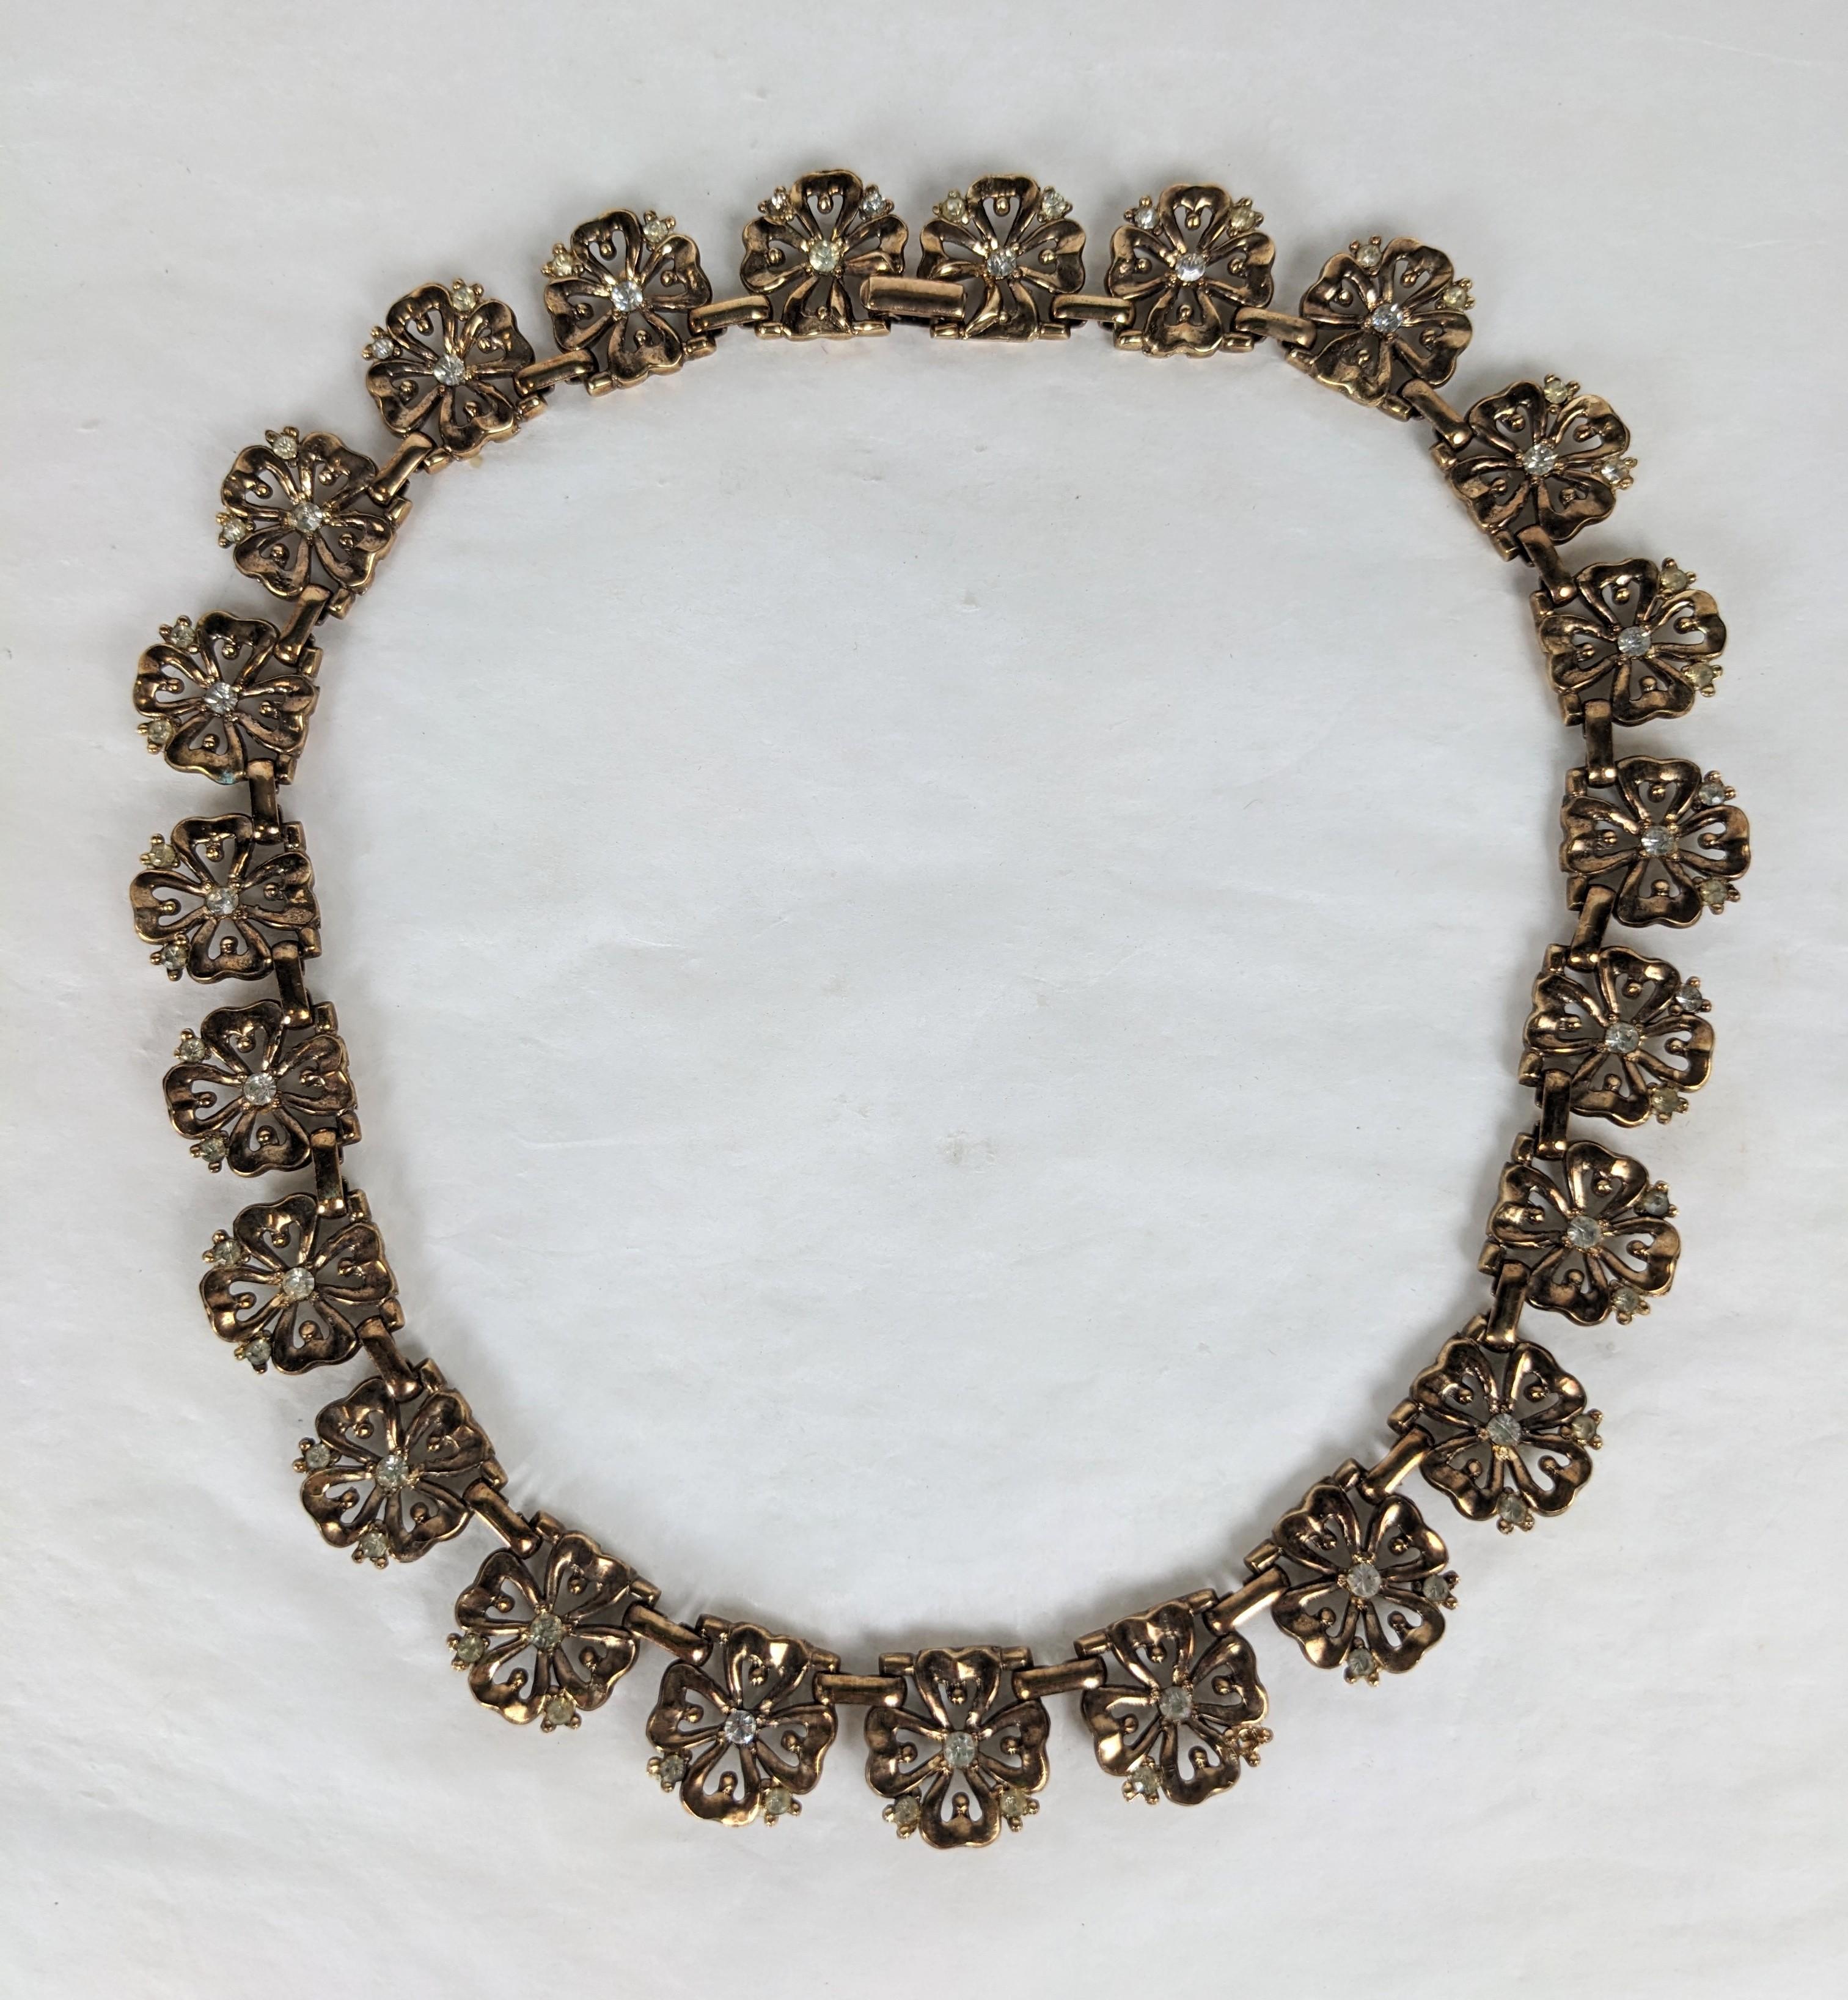 Elegant collier à maillons en or rose de Trifari, datant des années 1940, avec des accents pave. Chaque maillon est une fleur percée avec des cristaux. 16